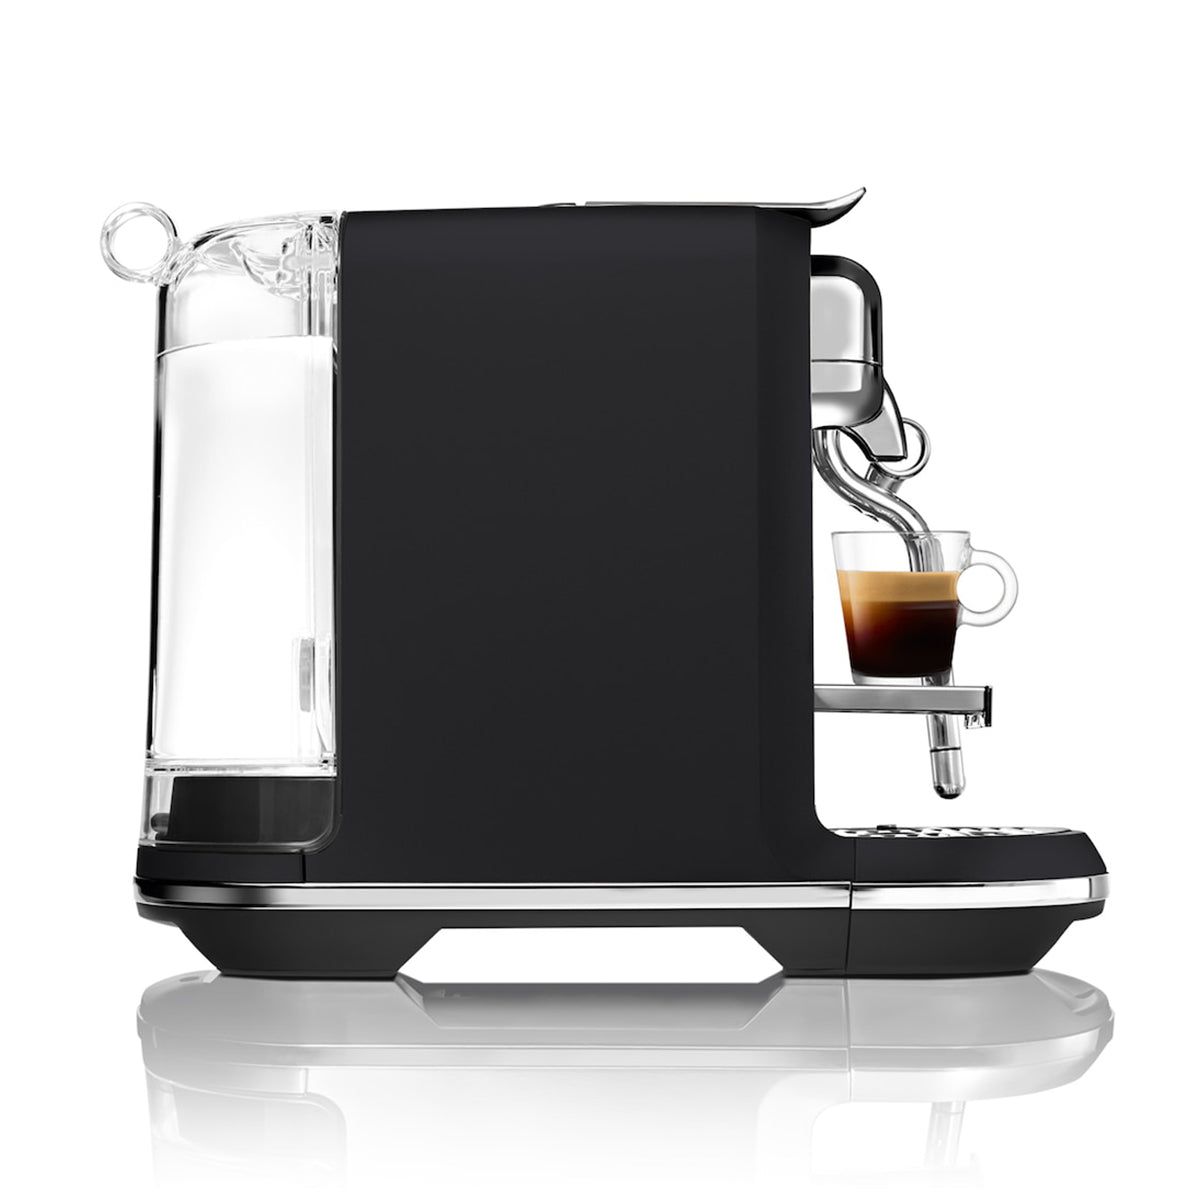 Nespresso Breville Creatista Plus Espresso Machine in Black Truffle